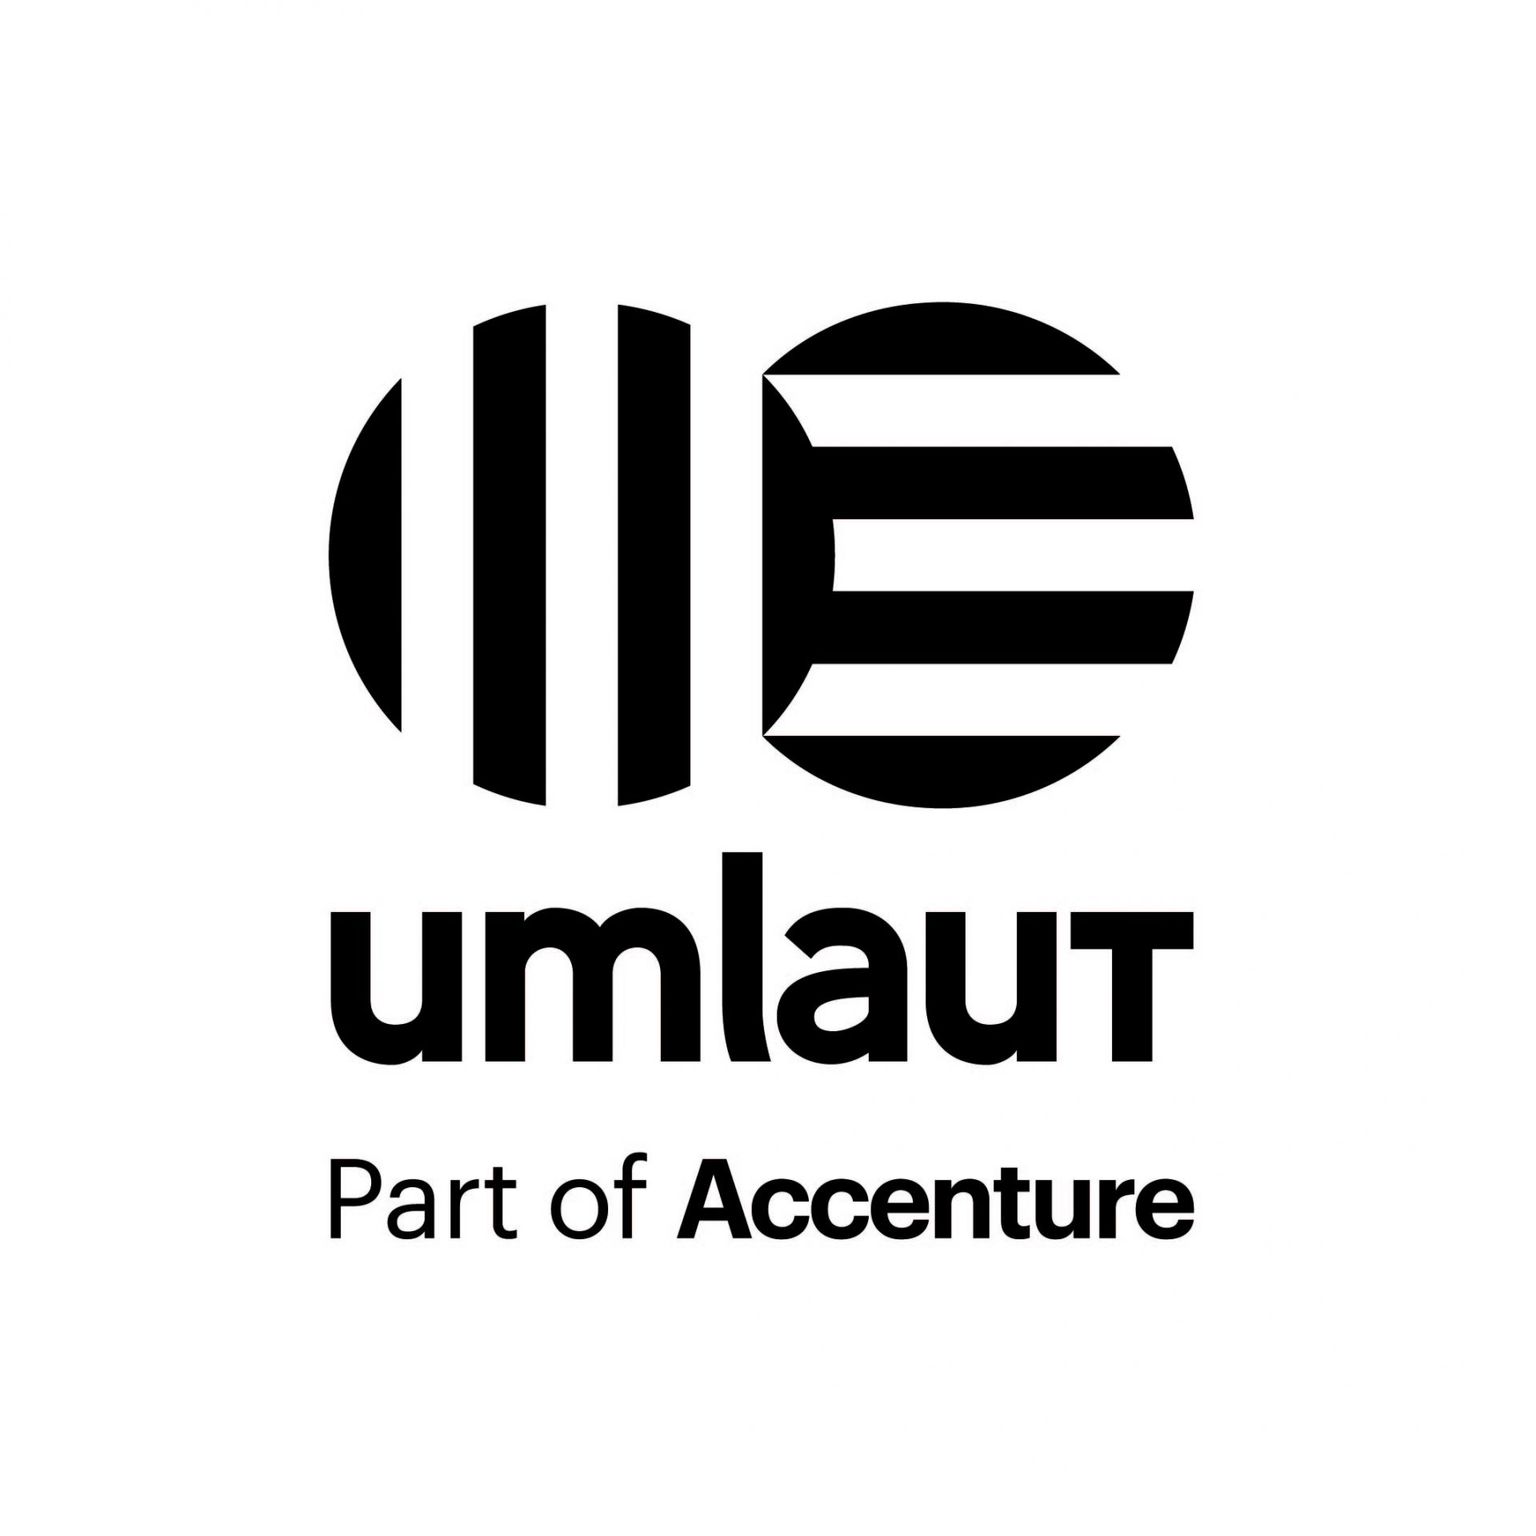 umlaut energy GmbH - Part of Accenture